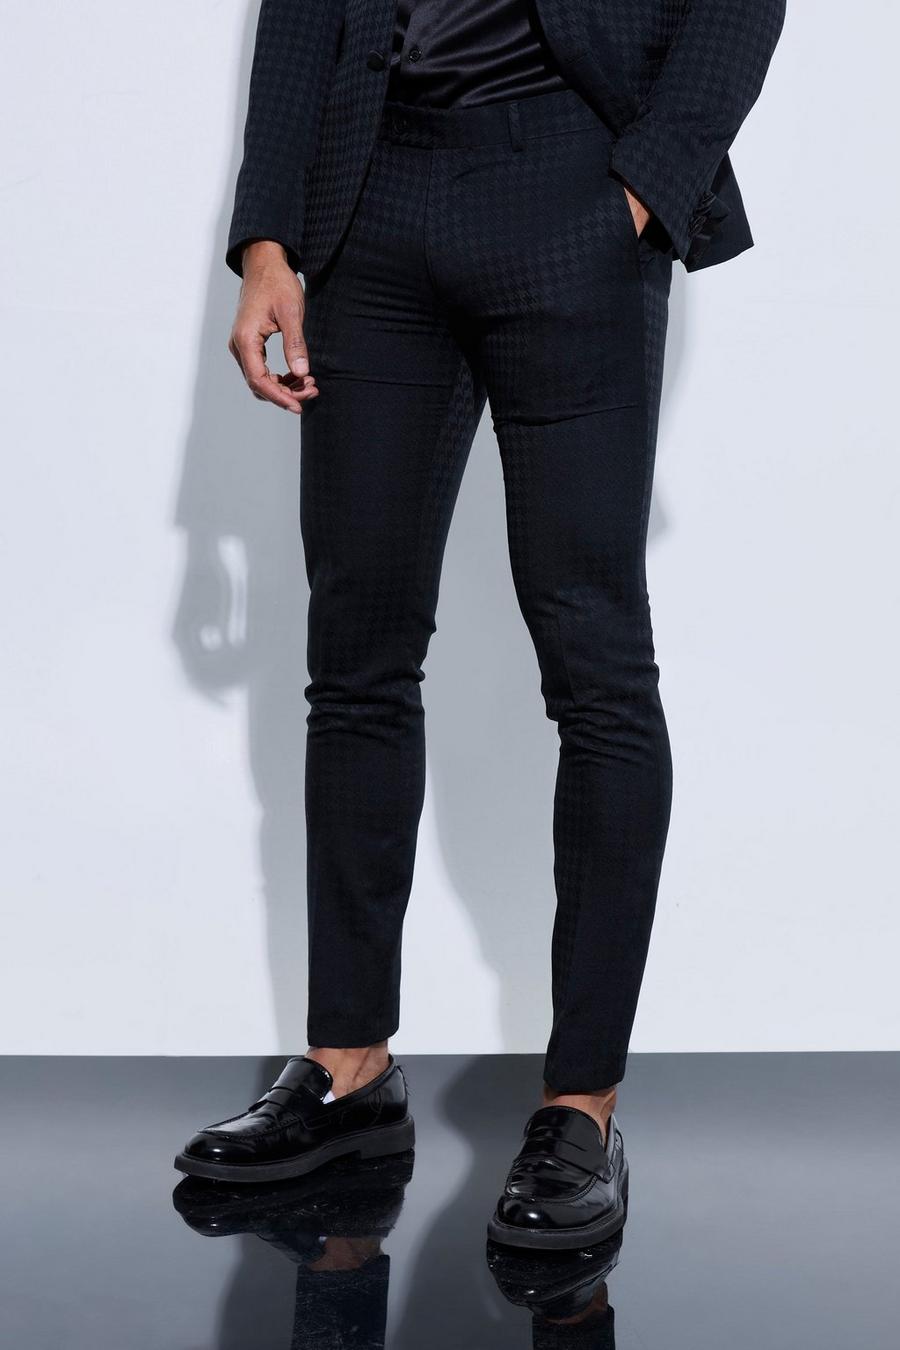 Men's Suit Trousers, Men's Black Suit Trousers